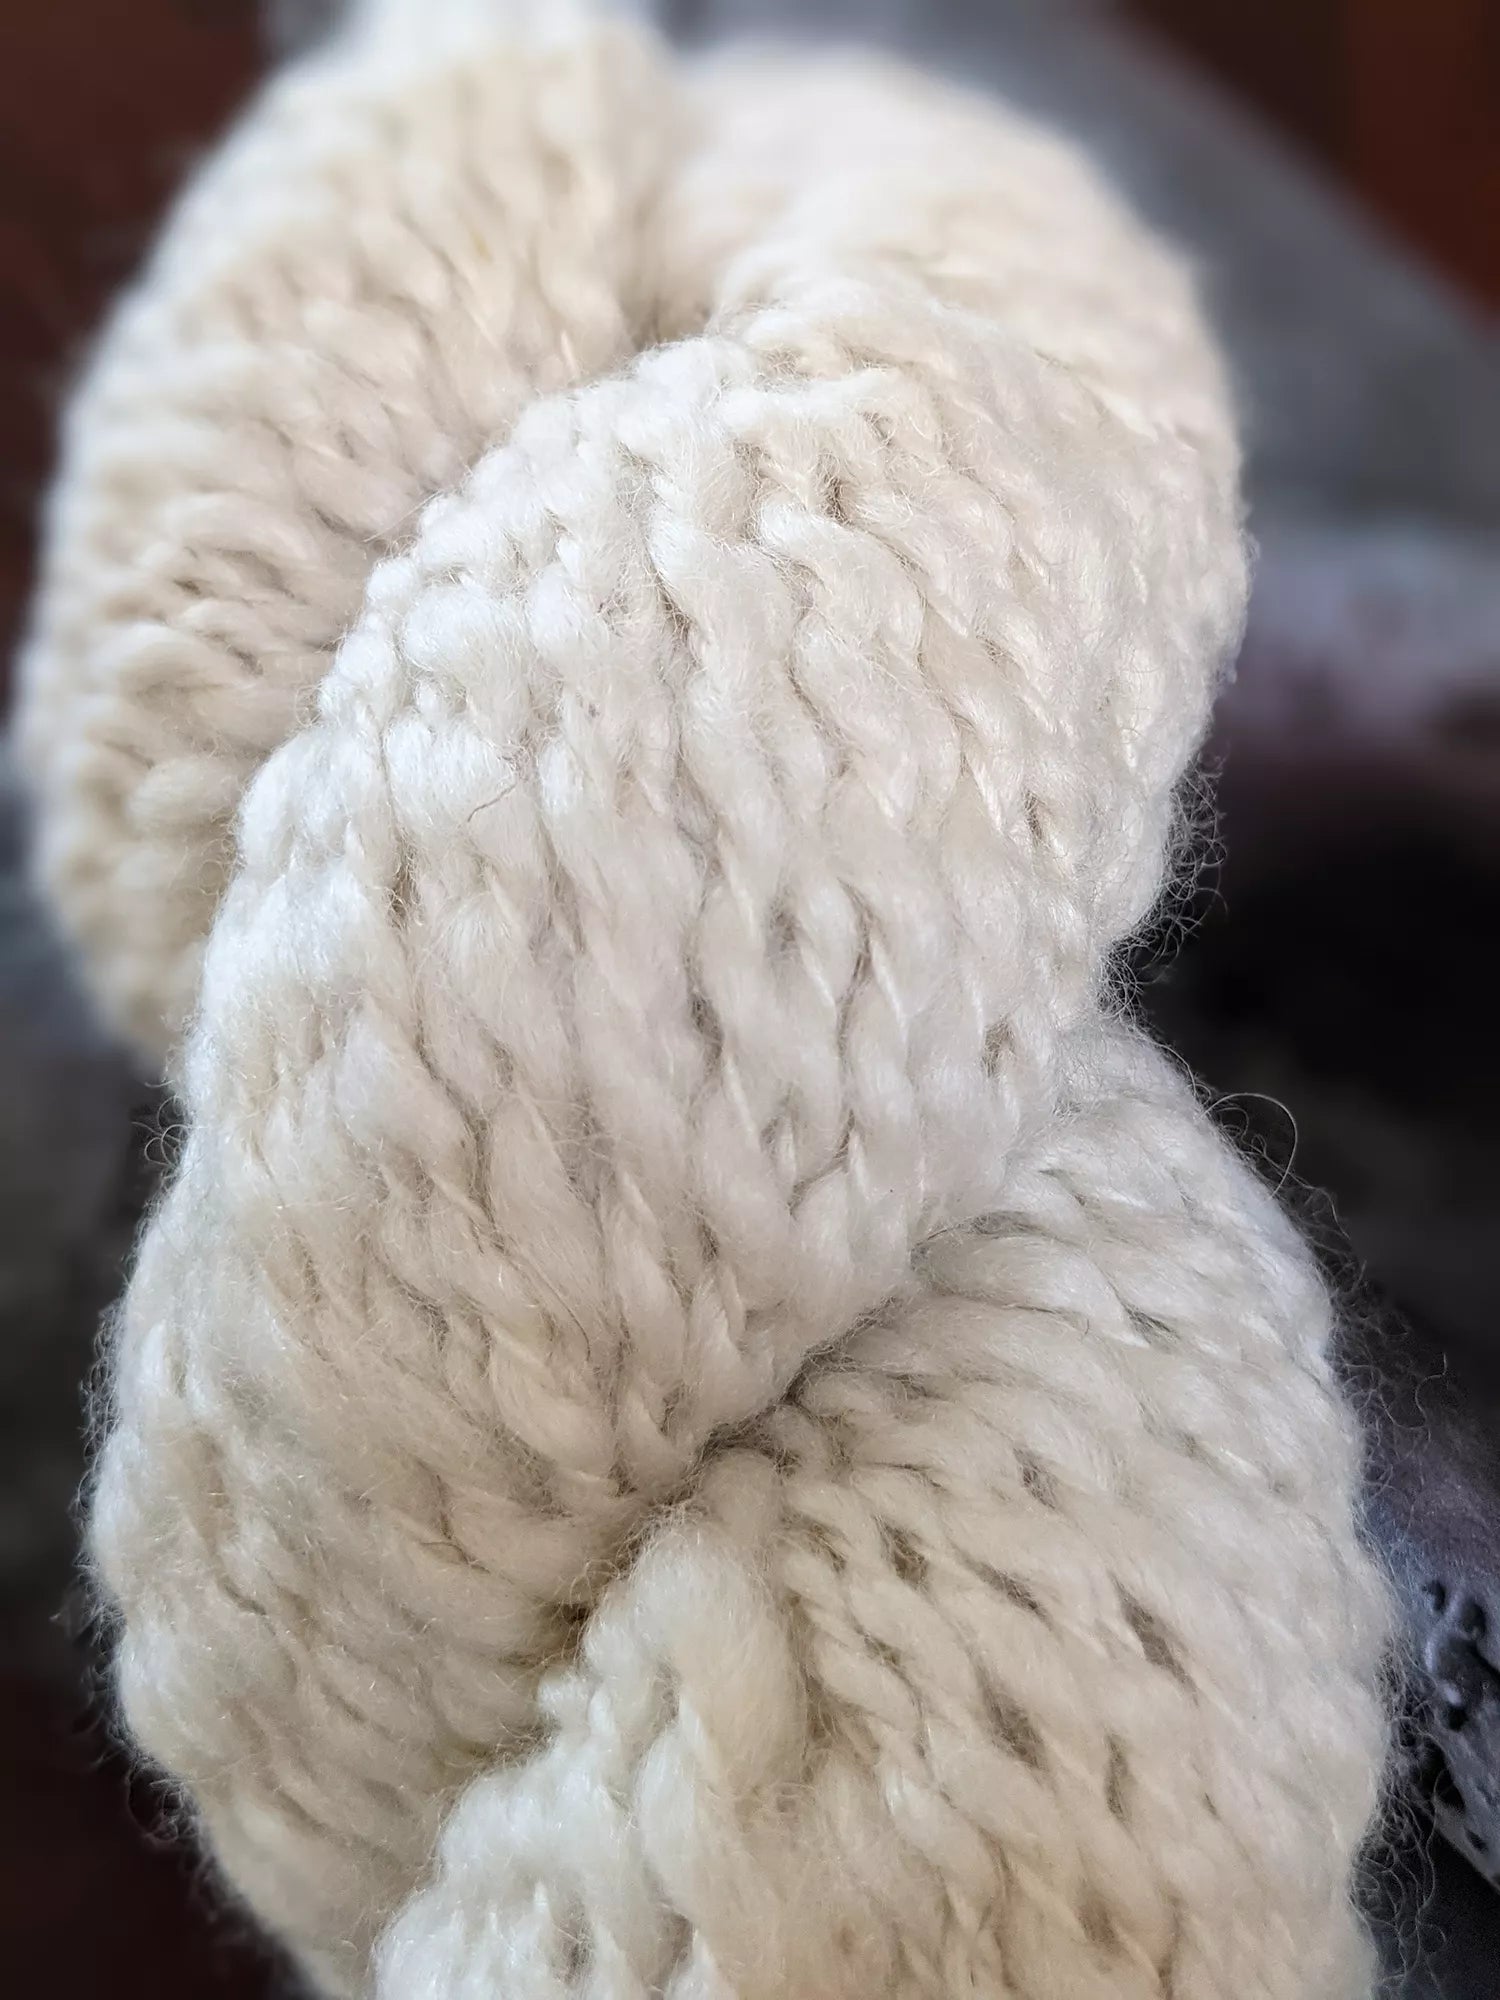 Baby Alpaca Pearl – weareknitters